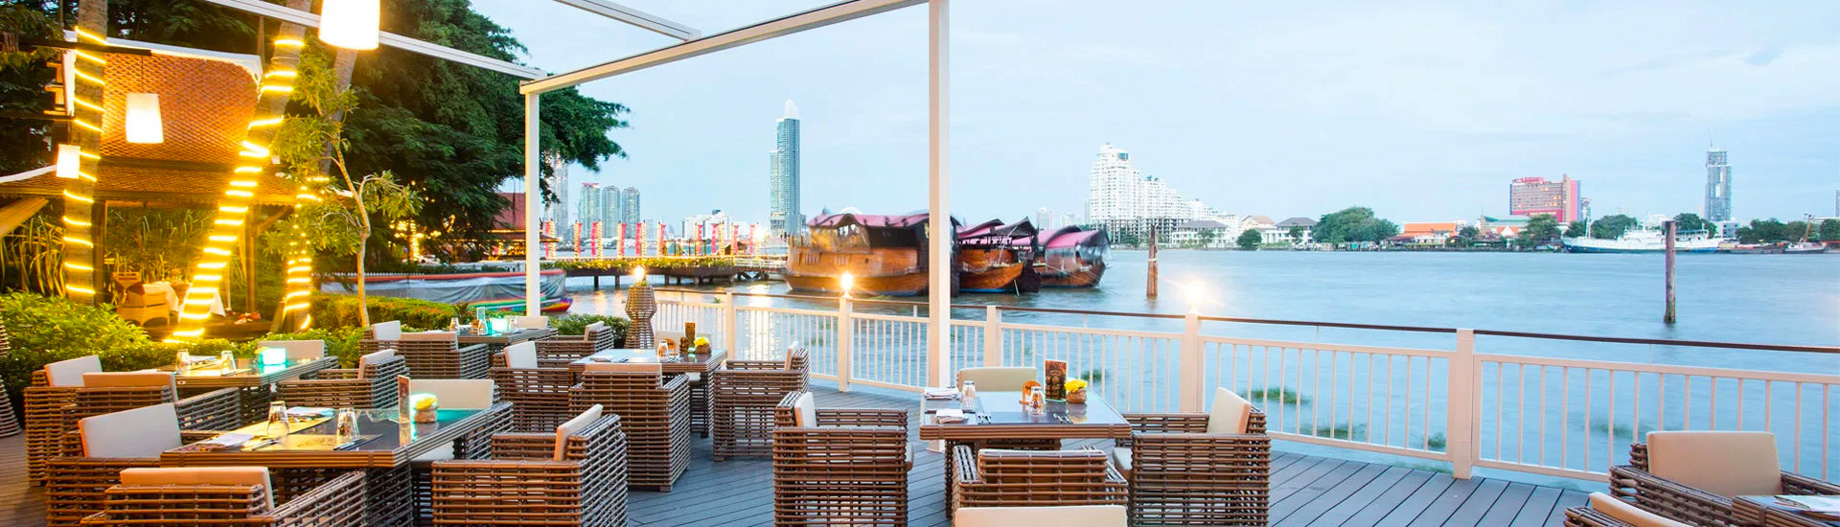 Anantara Riverside Bangkok Resort – Thailand – Trader Vics Restaurant